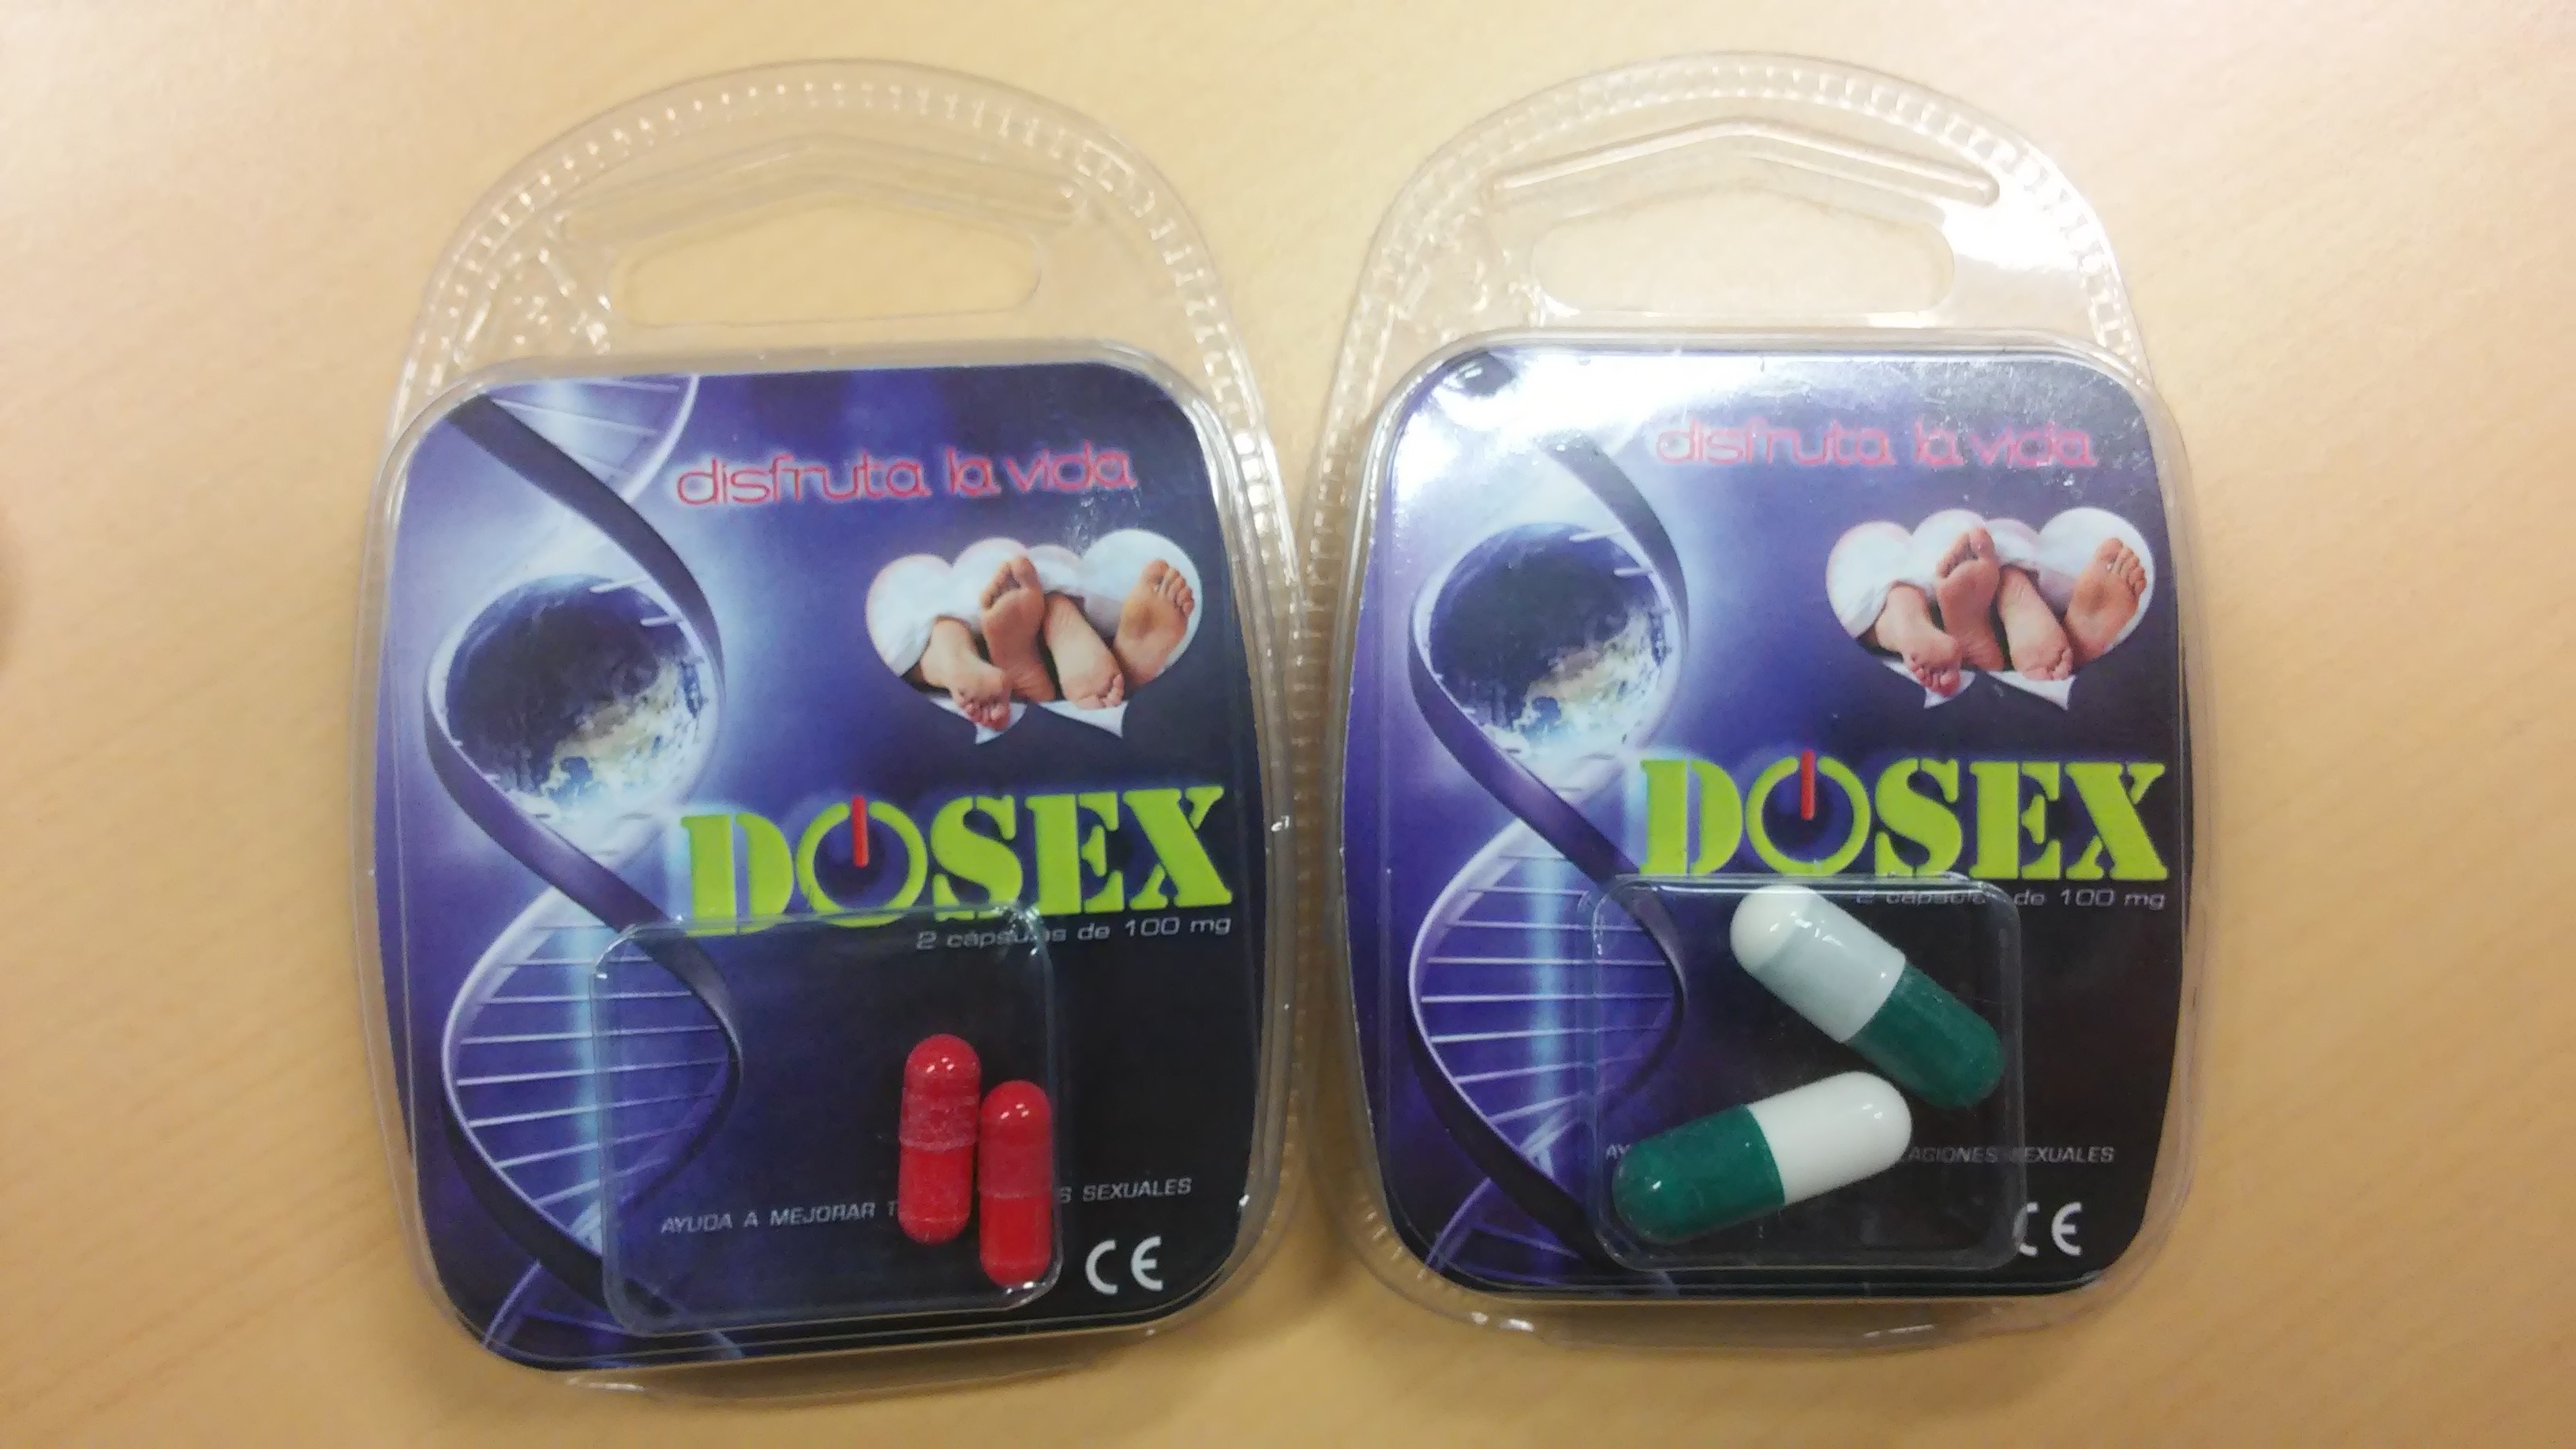 Billede af det ulovlige produkt: Dosex